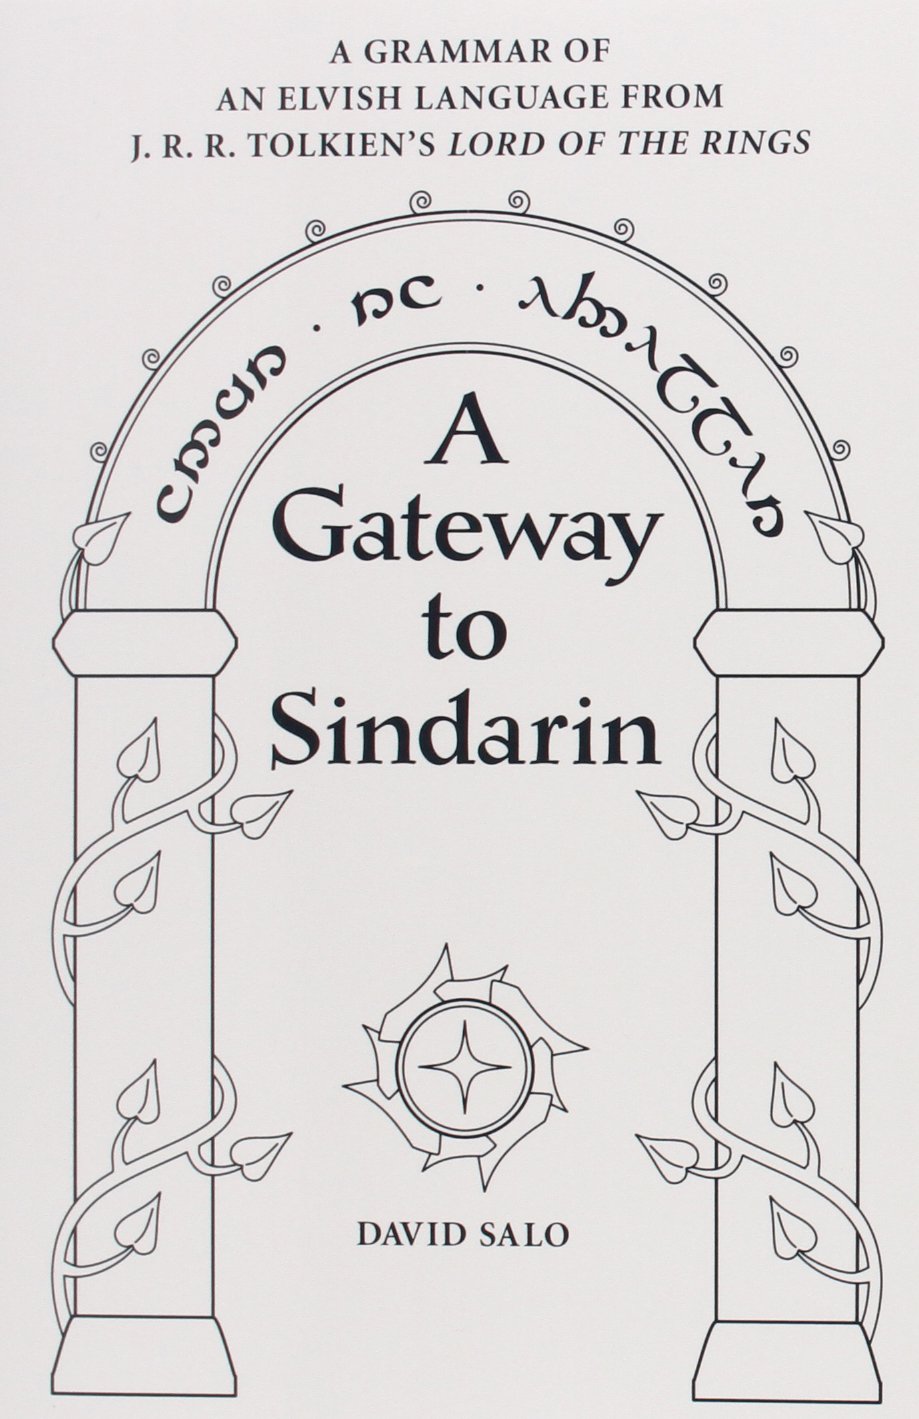 Moria - Tolkien Gateway